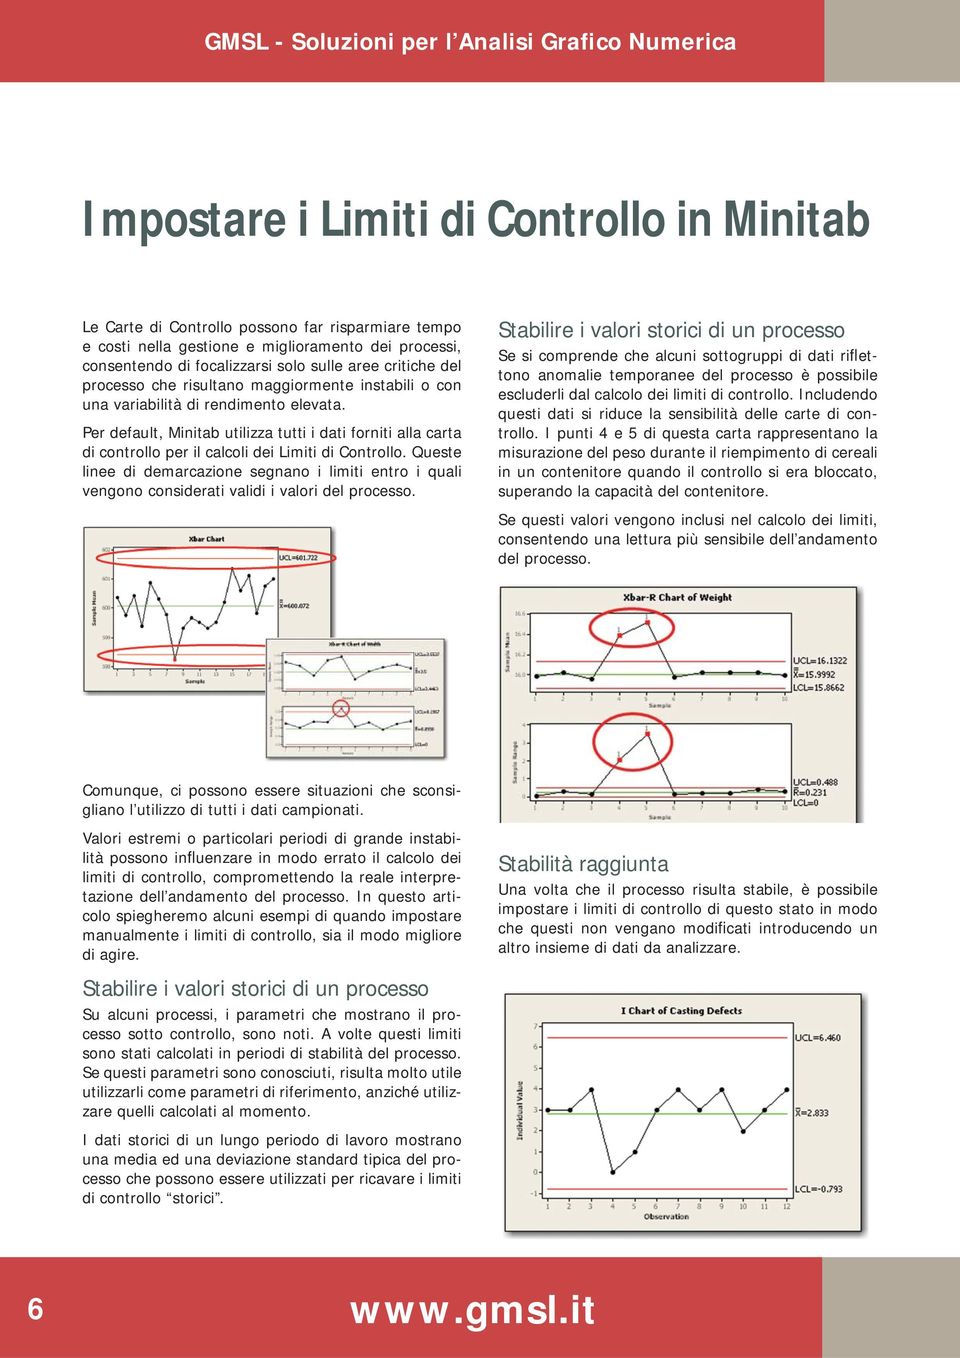 Per default, Minitab utilizza tutti i dati forniti alla carta di controllo per il calcoli dei Limiti di Controllo.